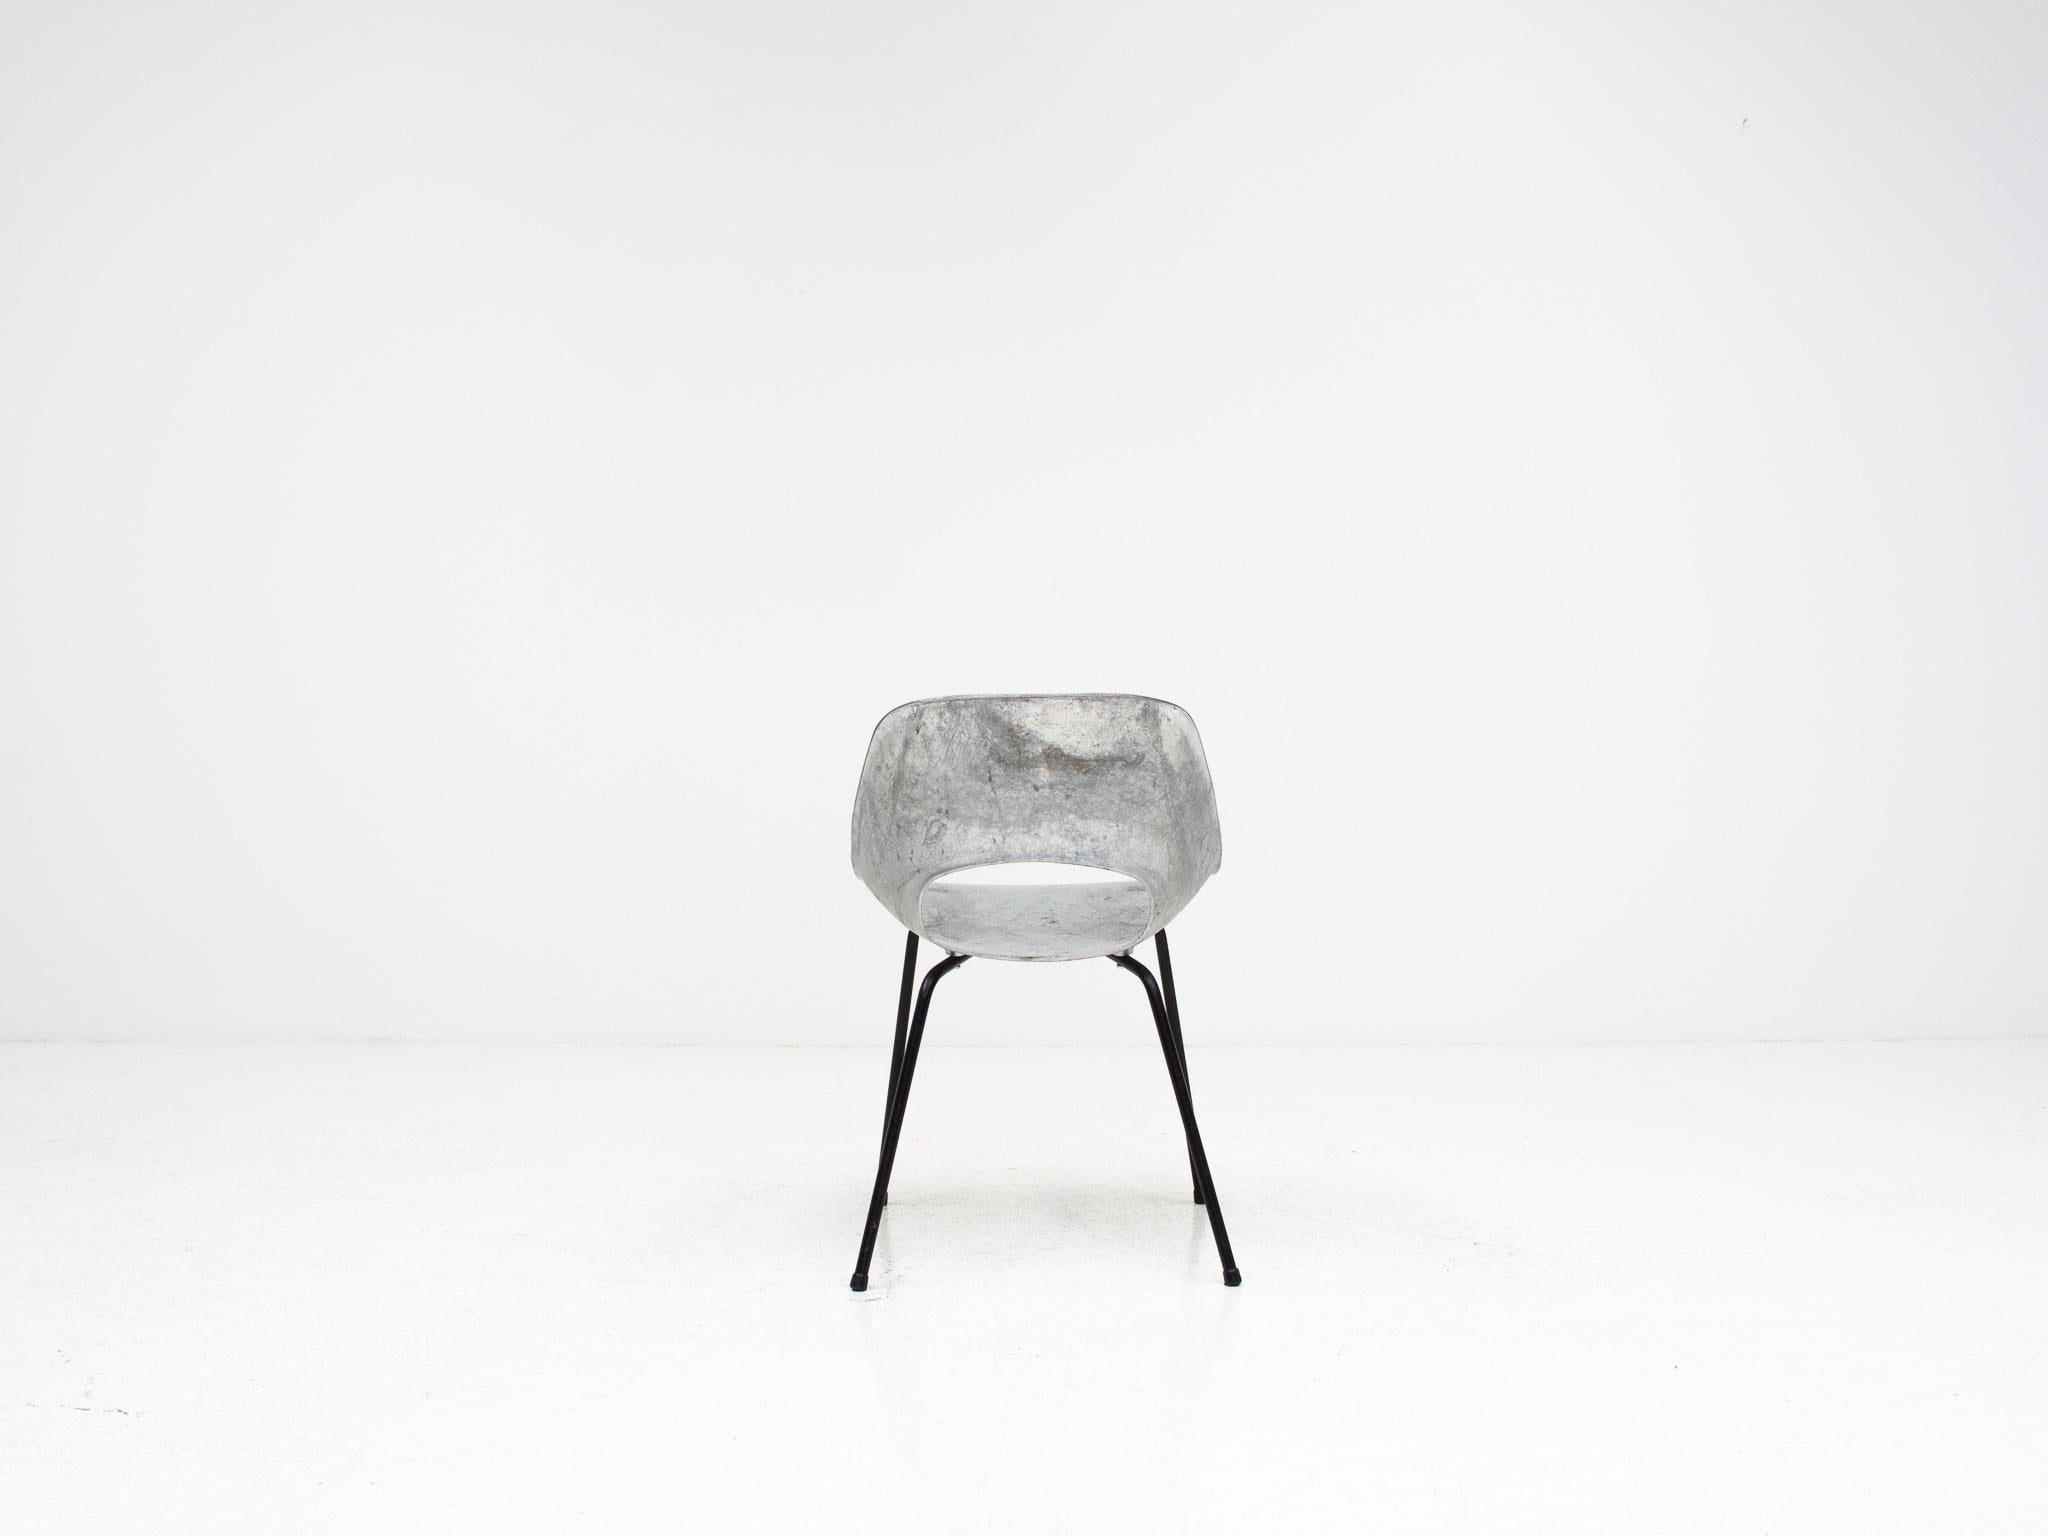 20th Century Pierre Guariche Tulip Chair, Cast Aluminum, Steiner Meubles, Paris, 1954 For Sale